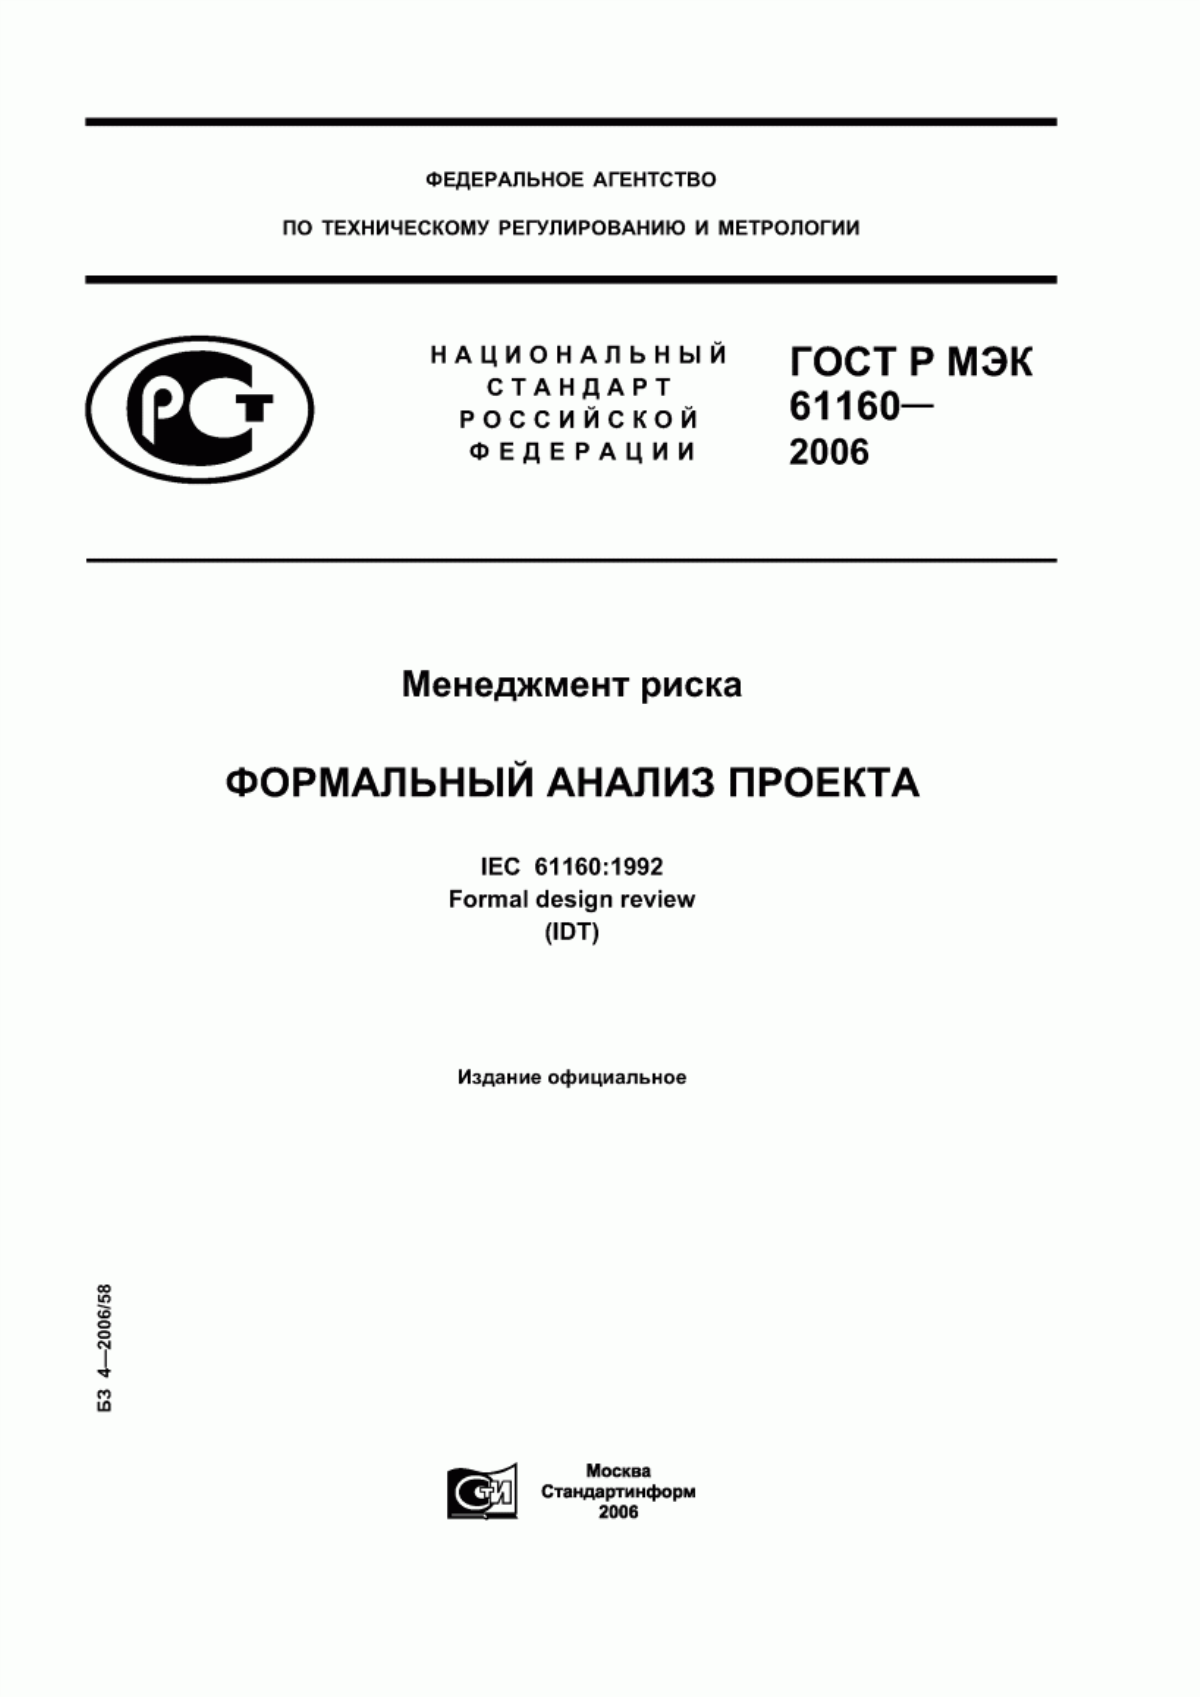 ГОСТ Р МЭК 61160-2006 Менеджмент риска. Формальный анализ проекта